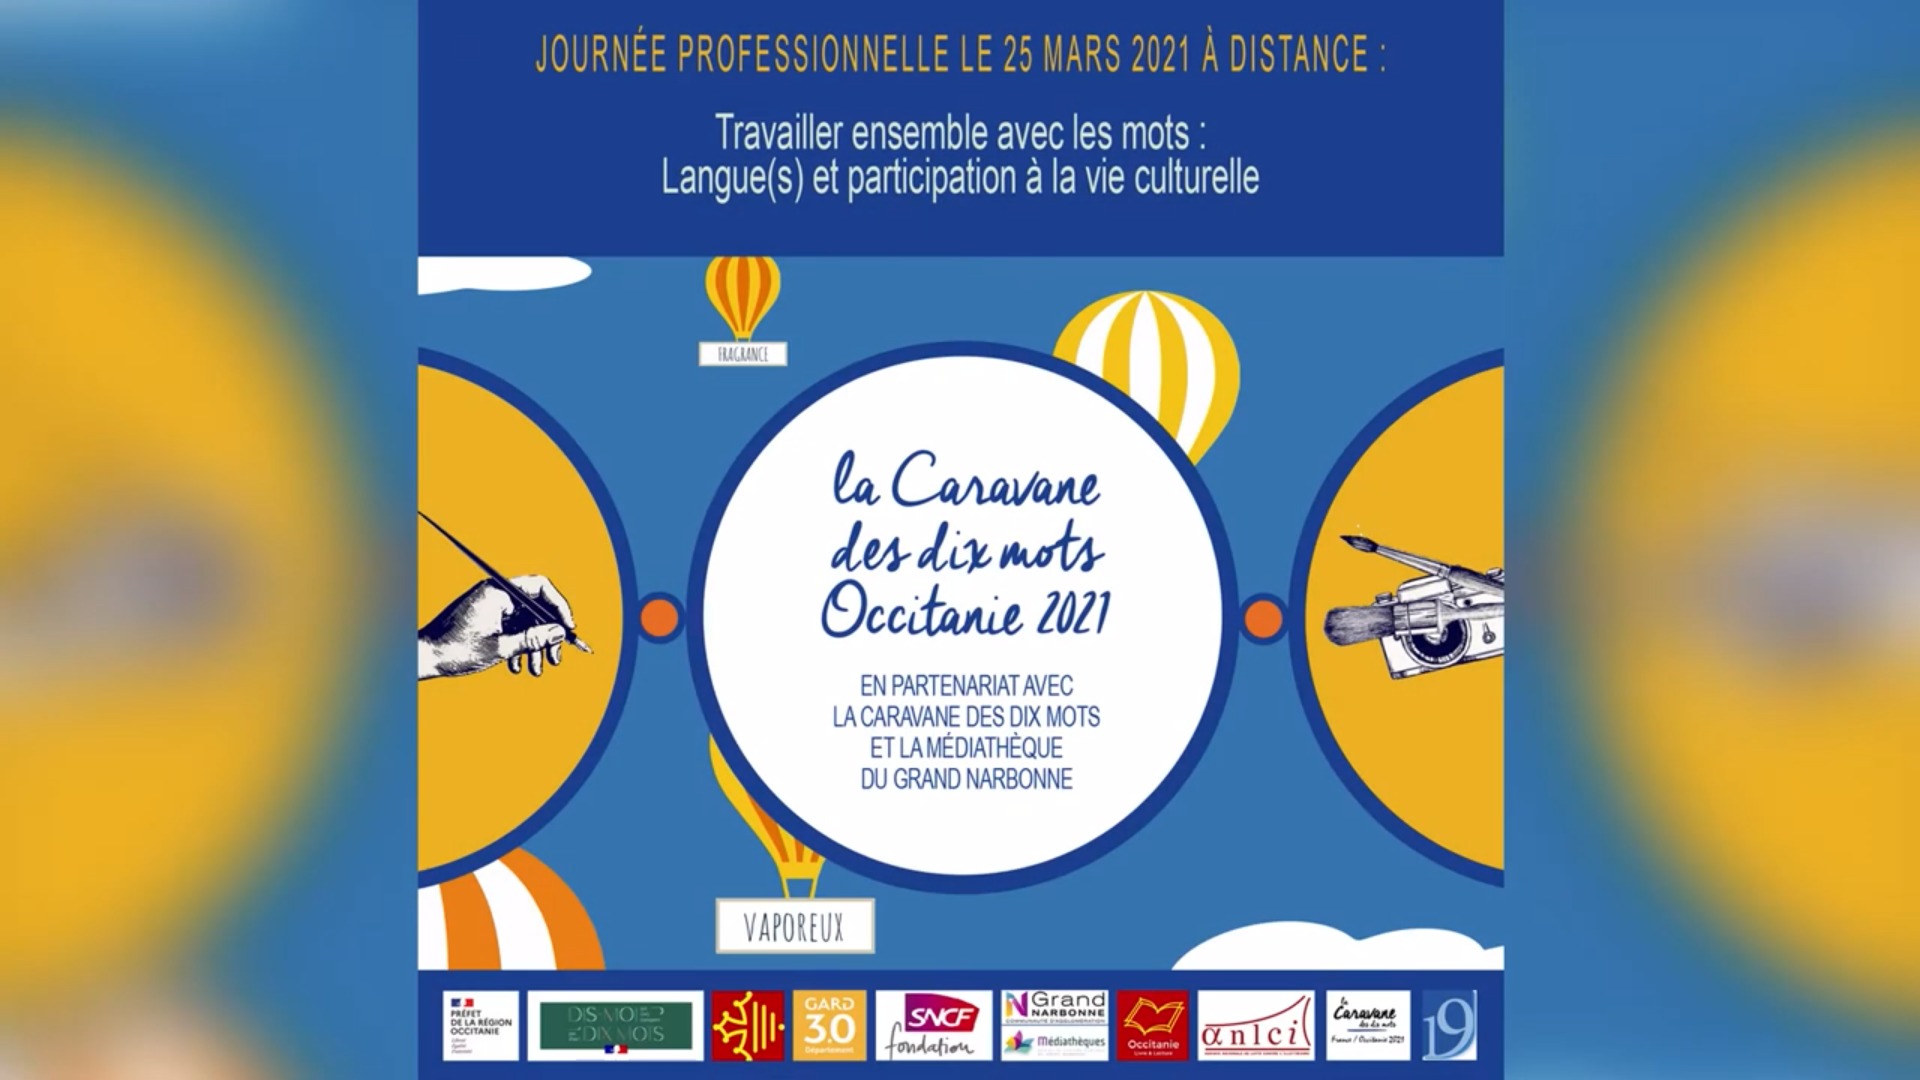 Film de la Journée Professionnelle – Caravane des 10 mots Occitanie